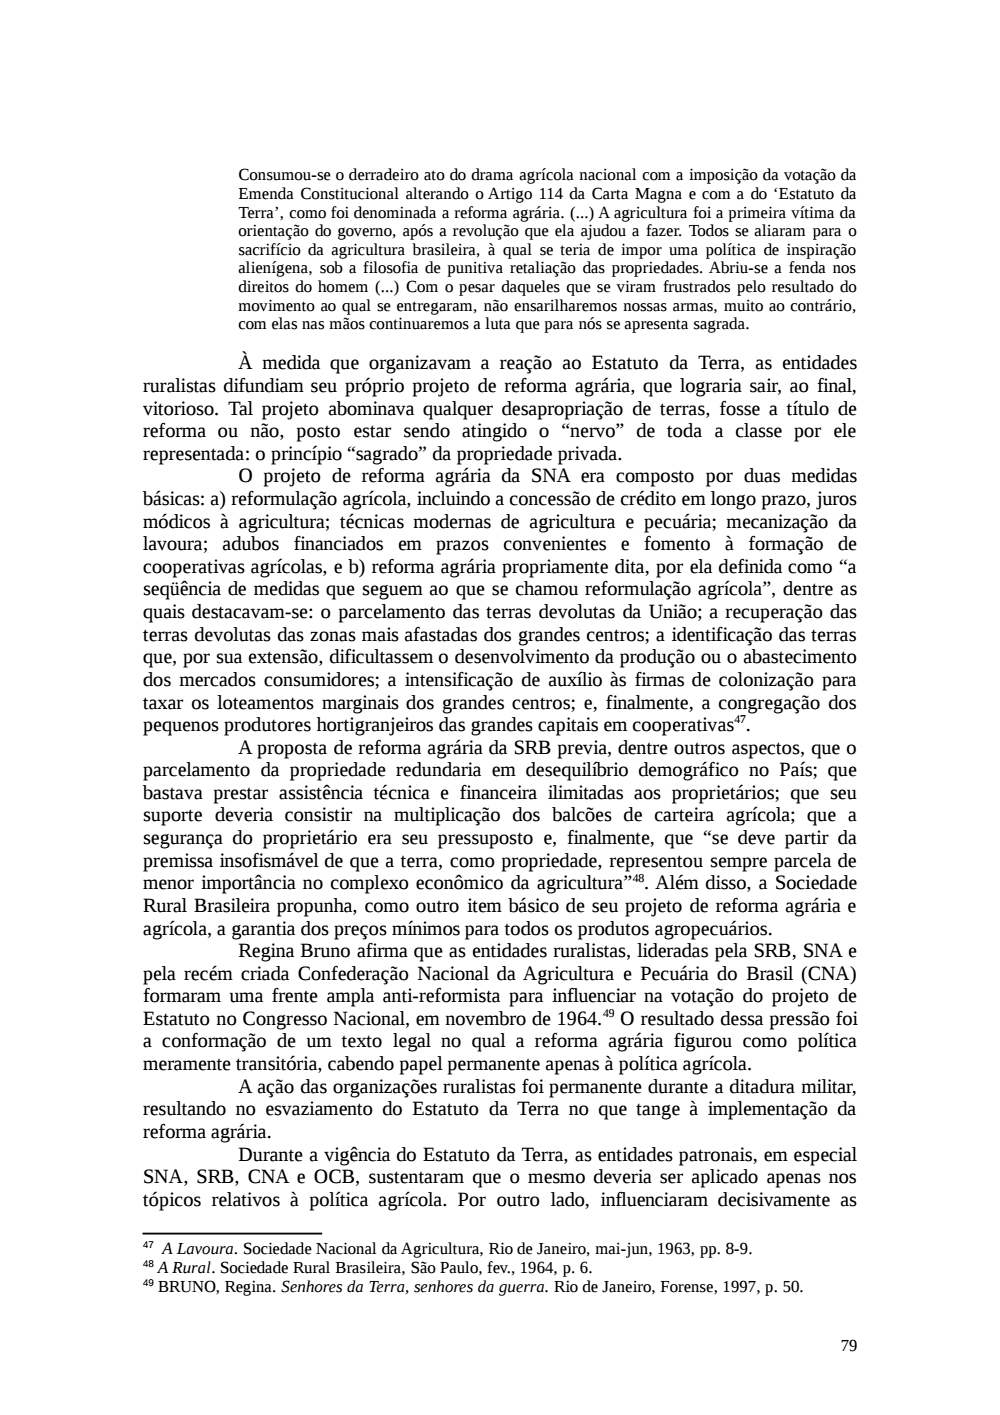 Page 79 from Relatório final da comissão